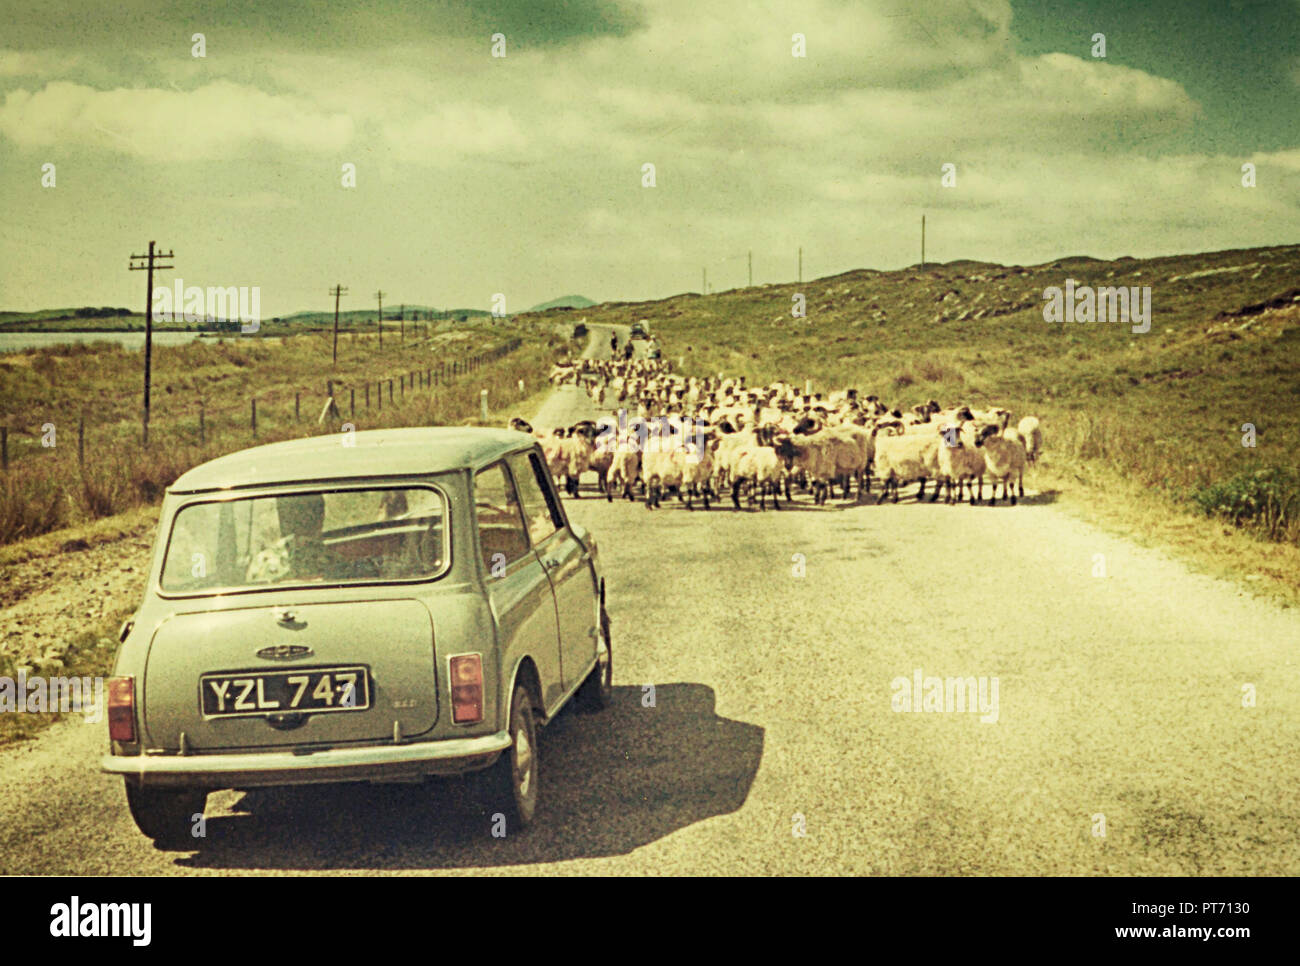 Settembre 1968, Scozia campagna, capi di bestiame su strada, viaggiatore attende con pazienza la fotografia vintage, scansione di immagine analogica Foto Stock